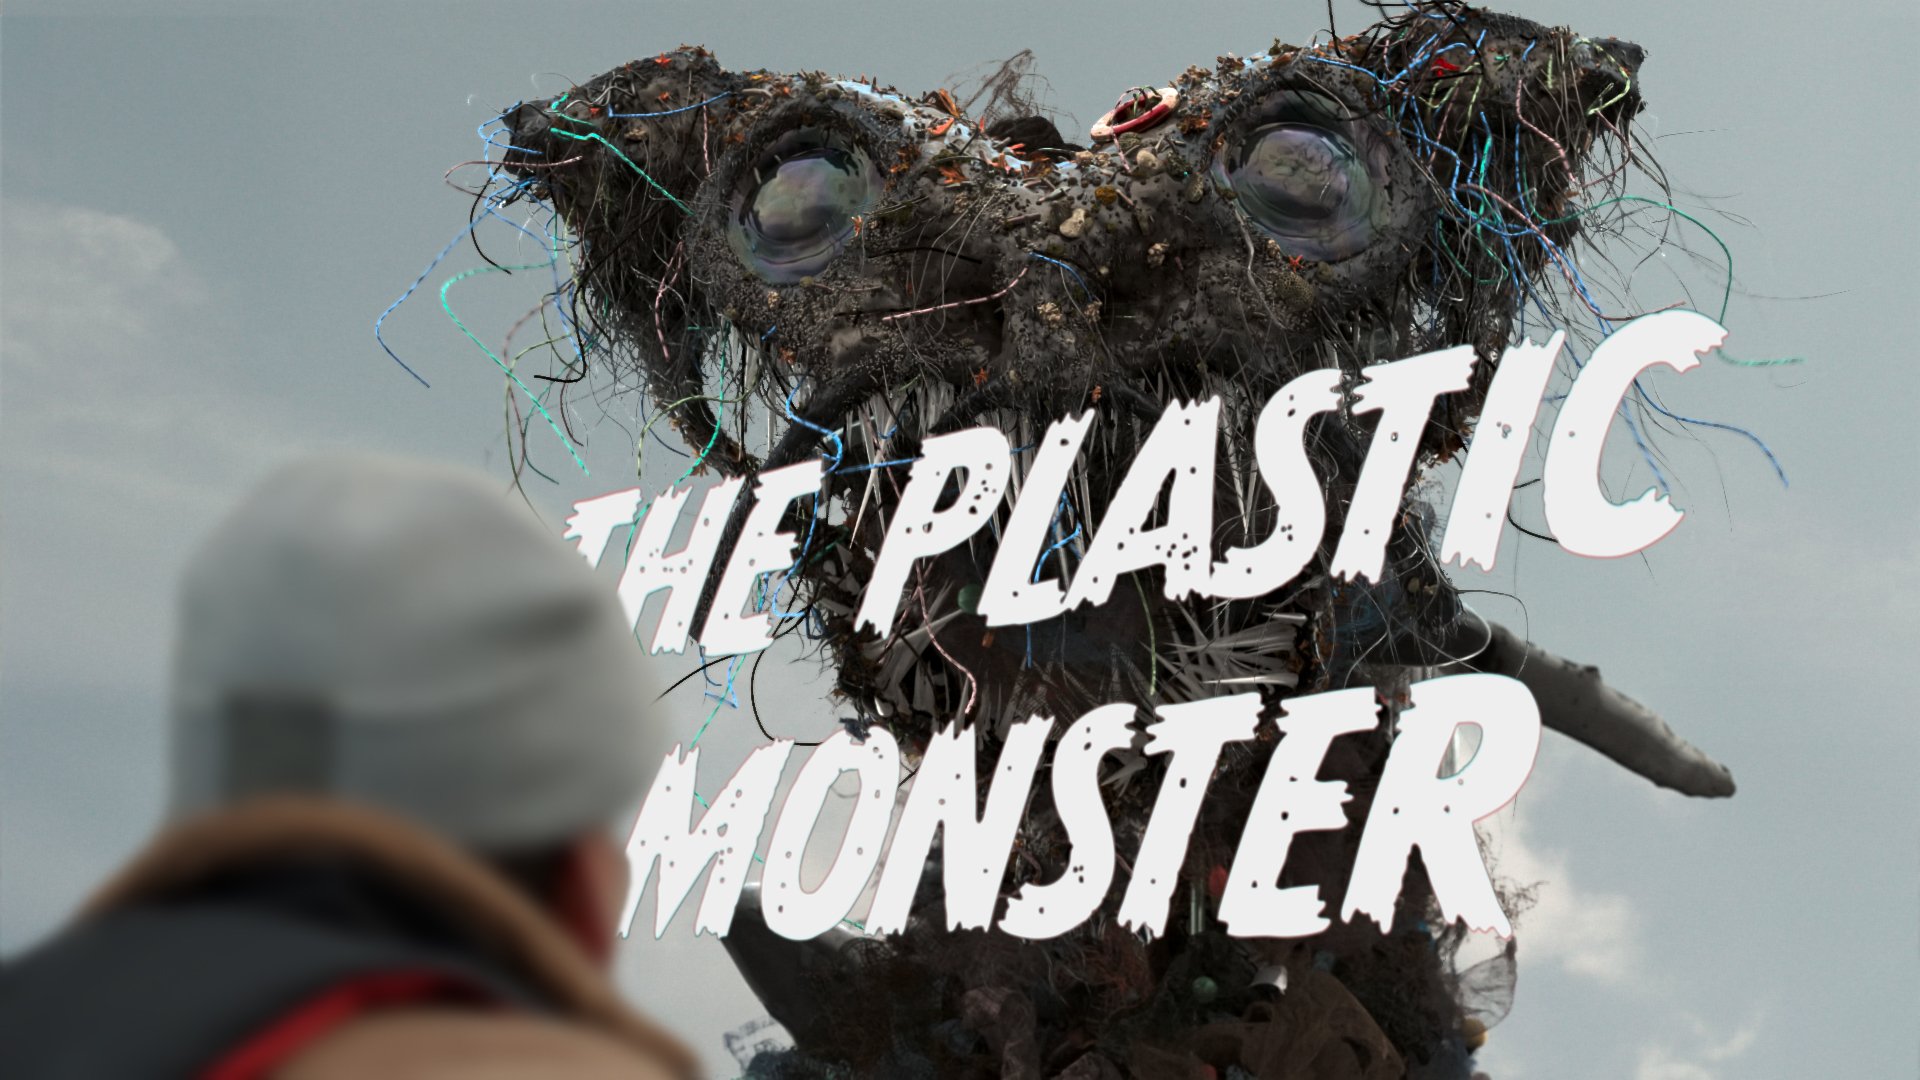 The Plastic Monster